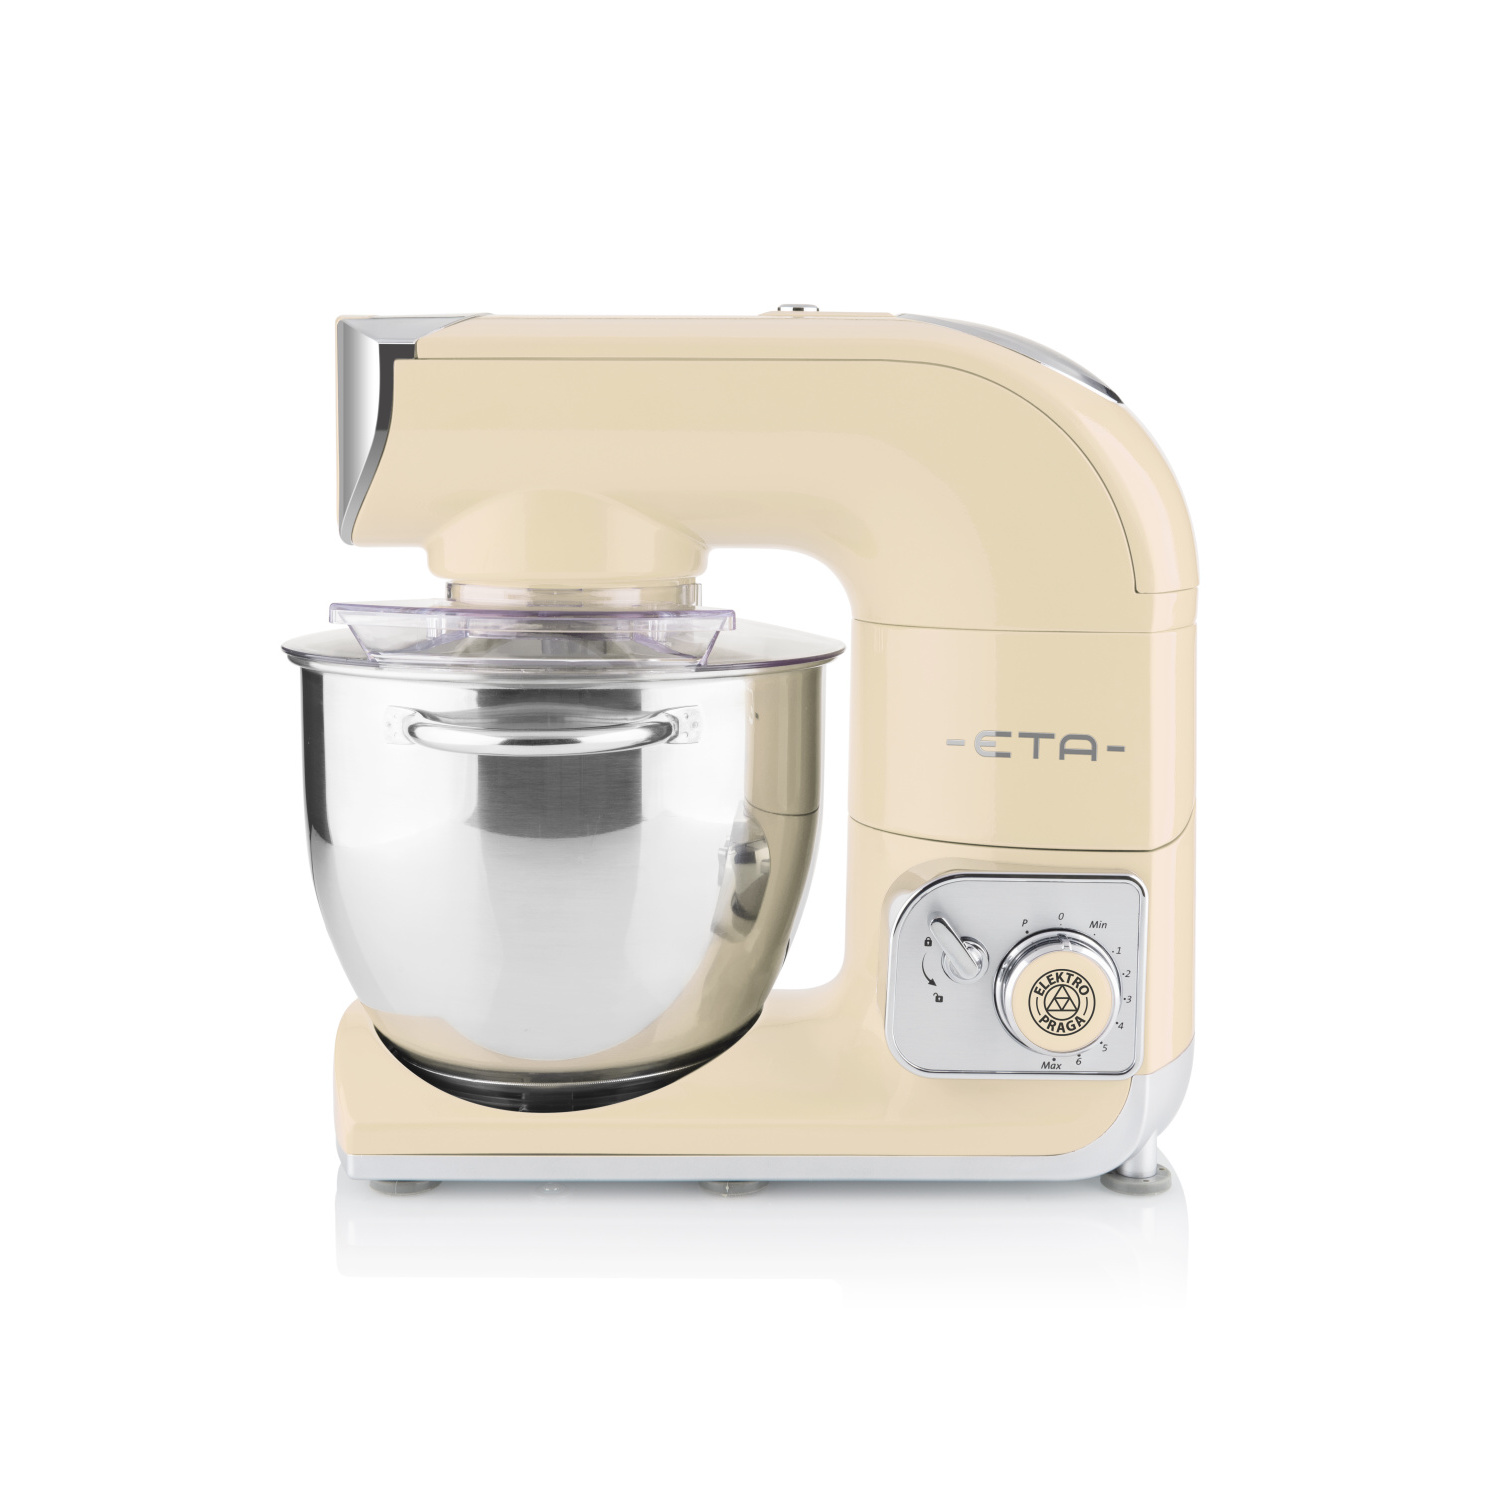 ETA Gratus Storio Retro Küchenmaschine Beige Creme 5,5 Liter, Watt) / (Rührschüsselkapazität: 1200